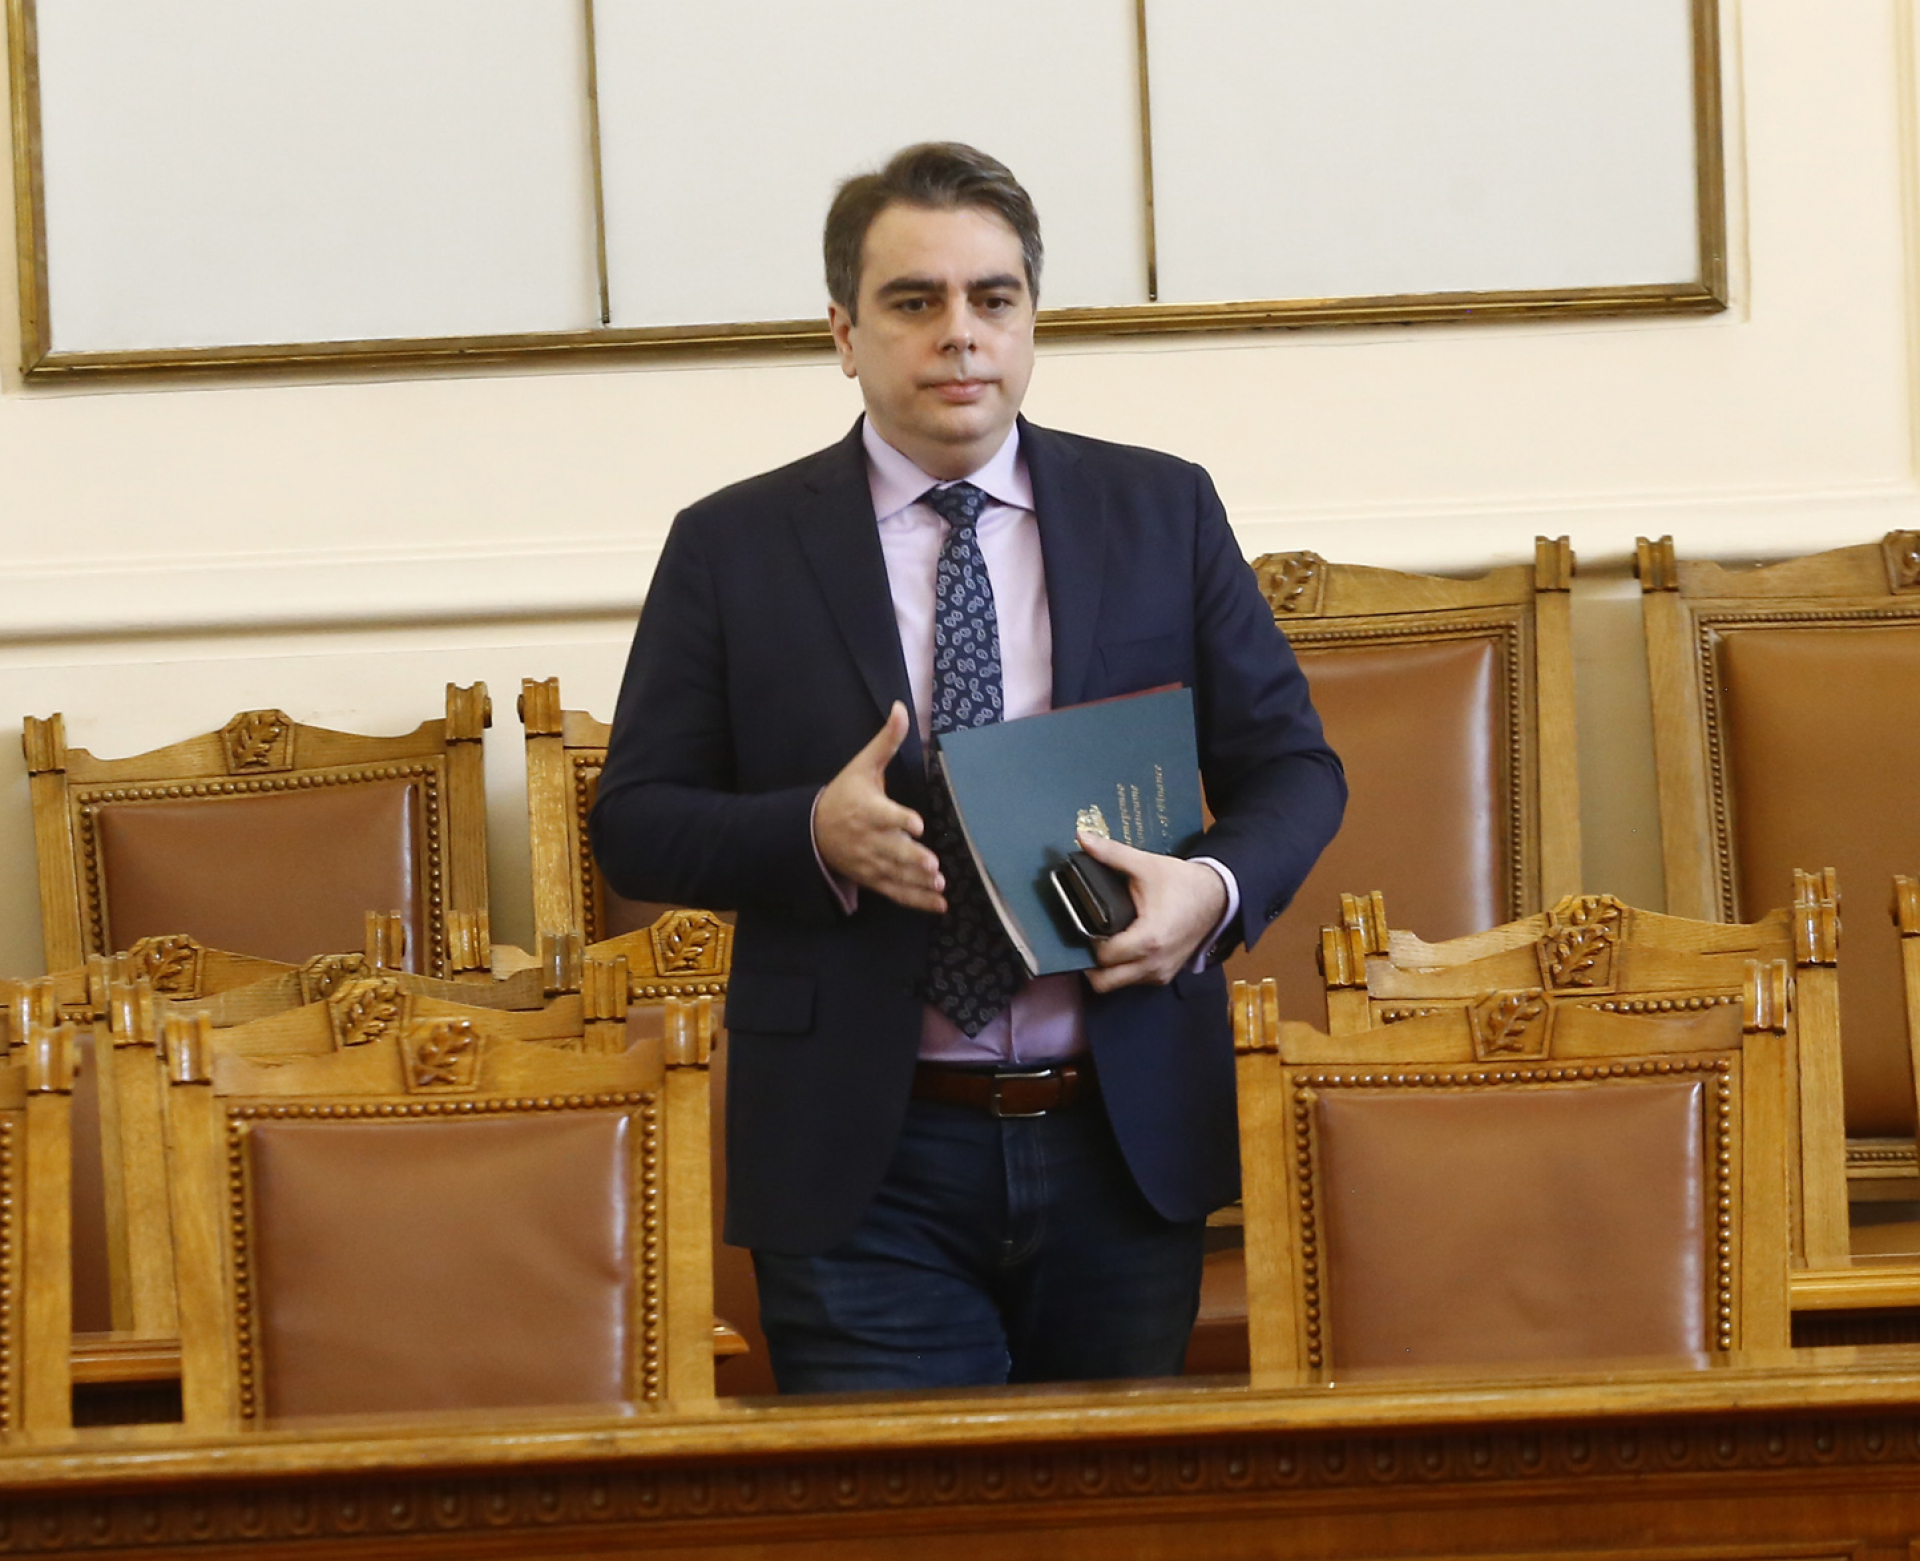 Хванаха го: Огласиха доказателство, че Василев е излъгал за скандалните 9 млрд. лв.